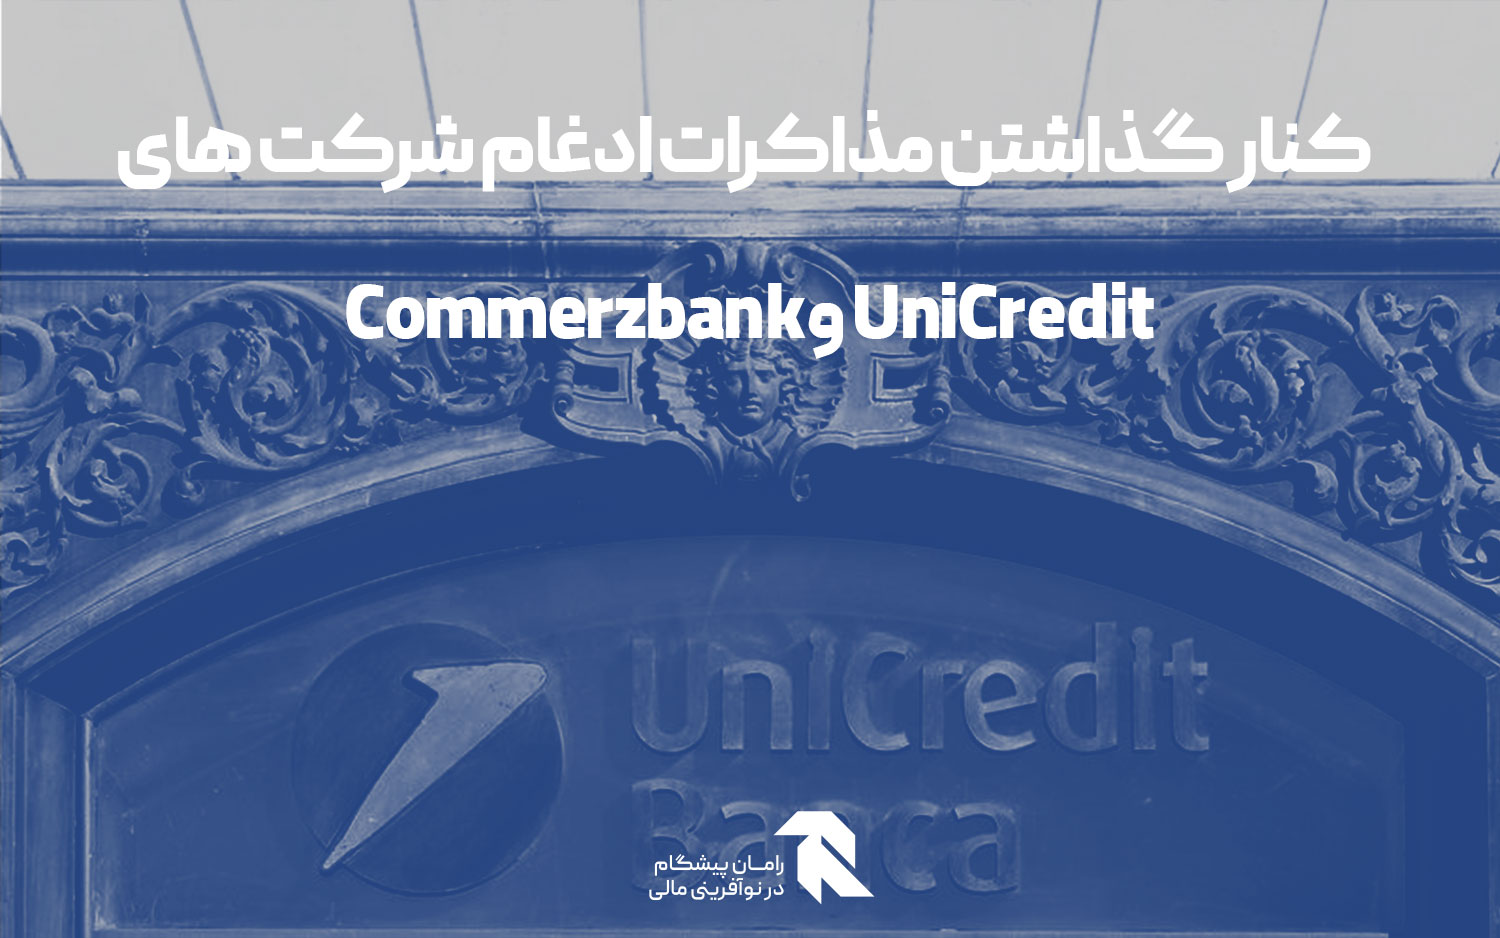 کنار گذاشتن مذاکرات ادغام شرکت های UniCredit و Commerzbank